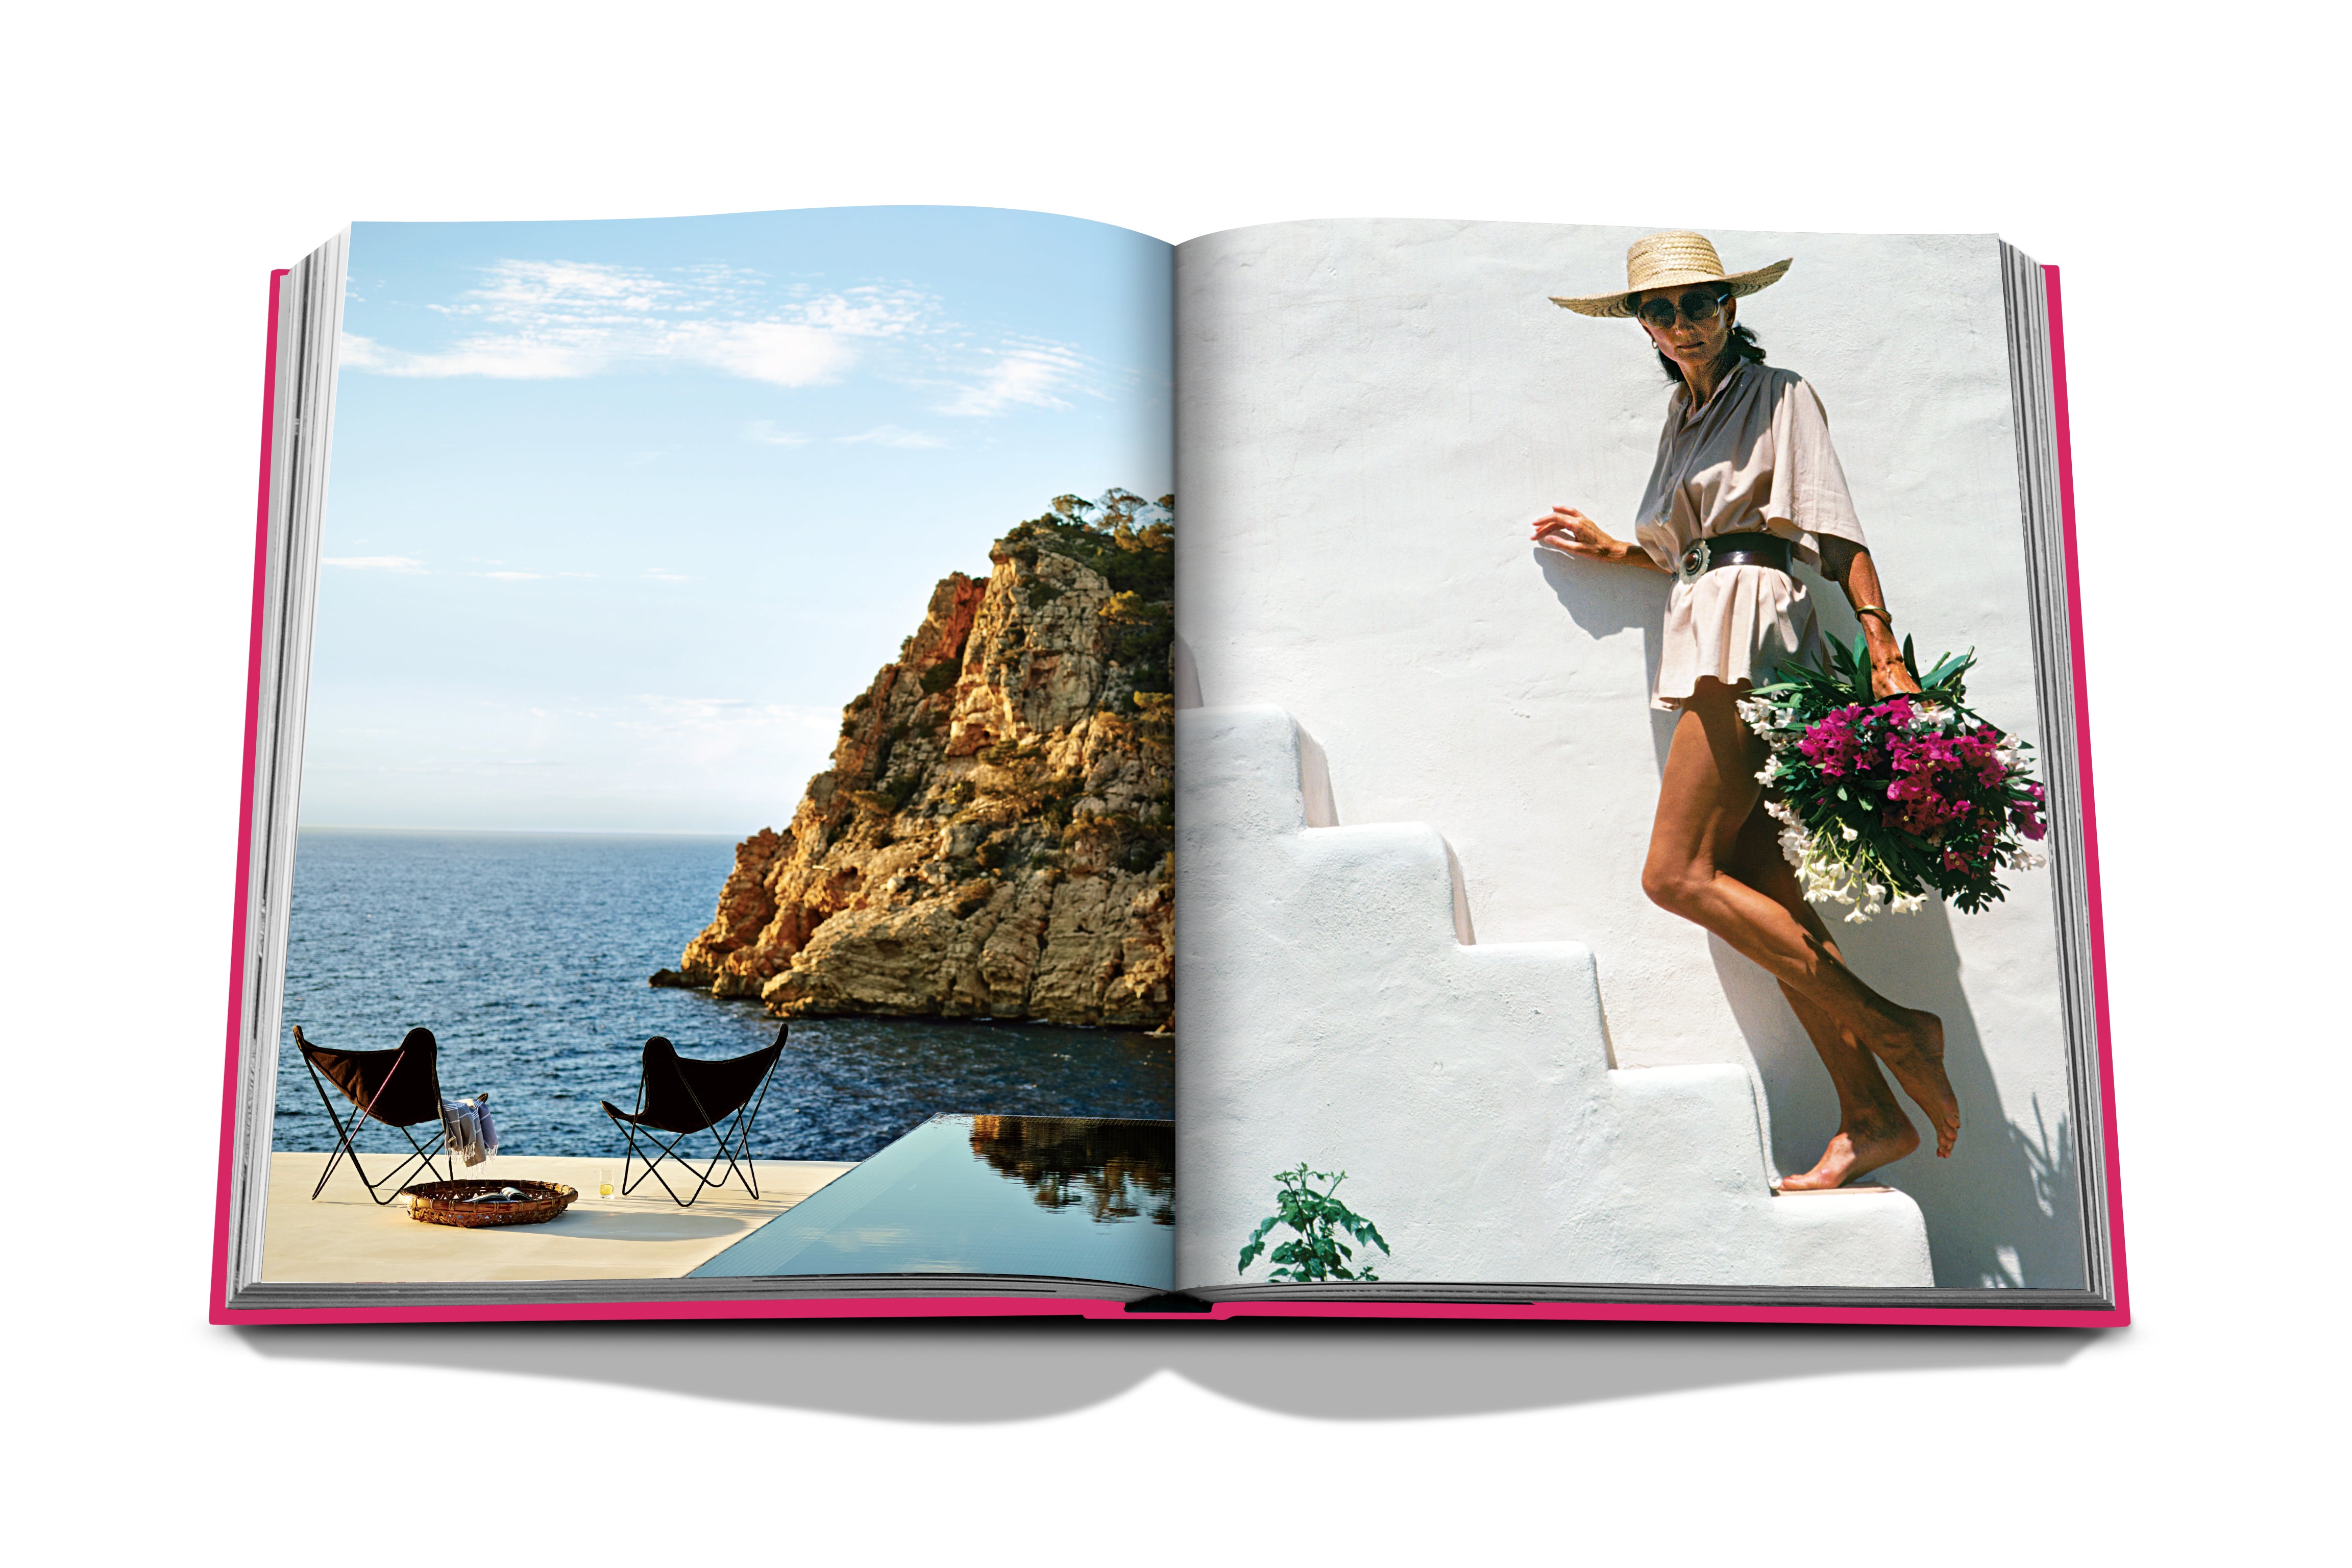 Ibiza Bohemia in  präsentiert im Onlineshop von KAQTU Design AG. Kunstgegenstände ist von Assouline